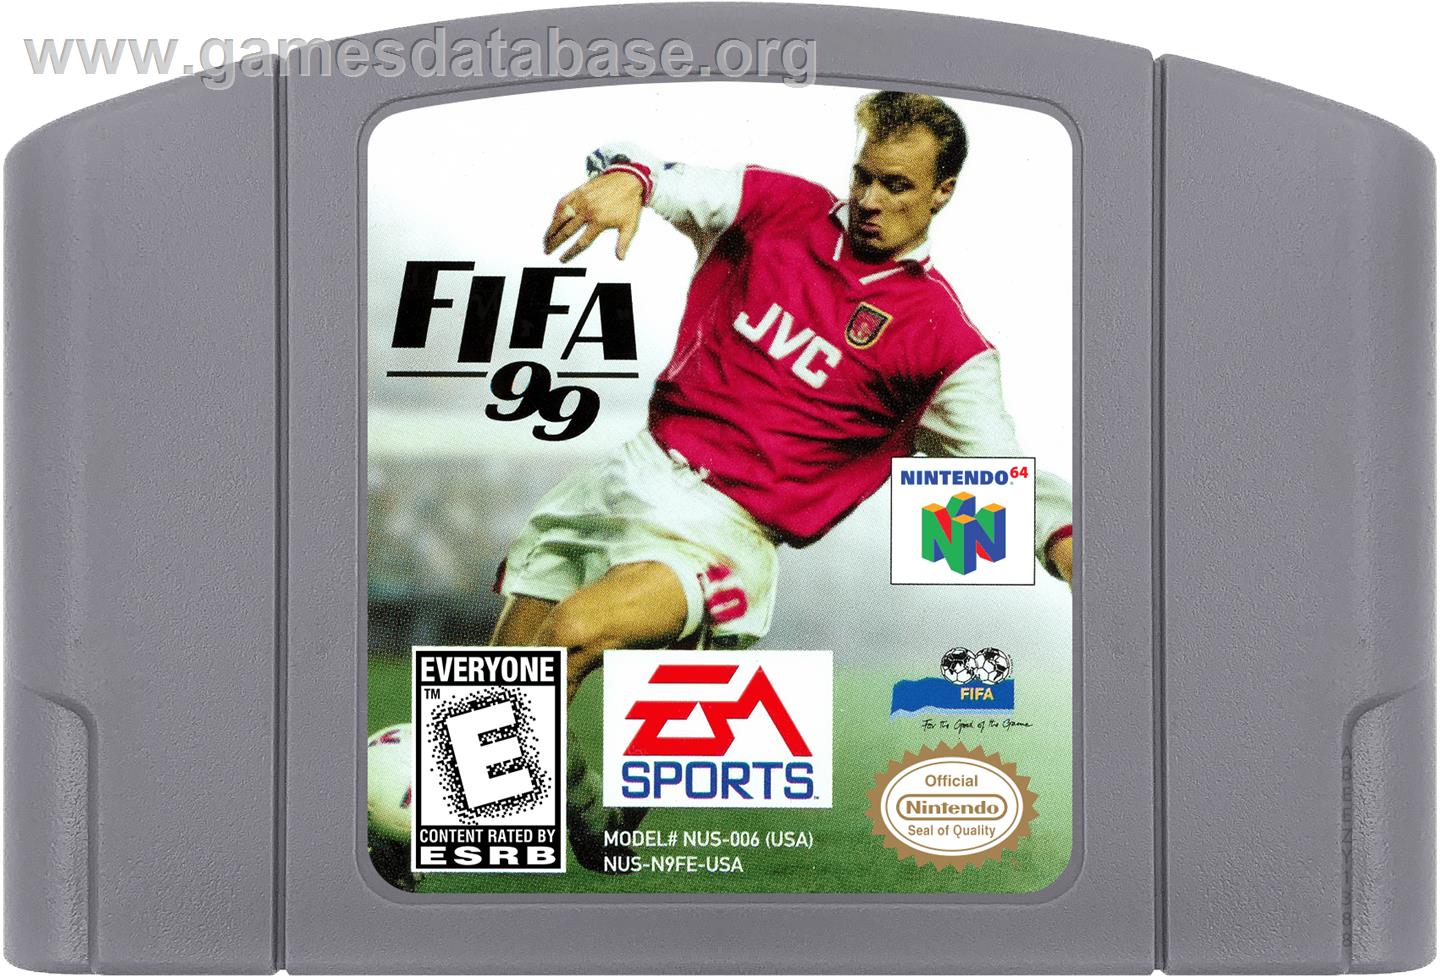 FIFA 99 - Nintendo N64 - Artwork - Cartridge